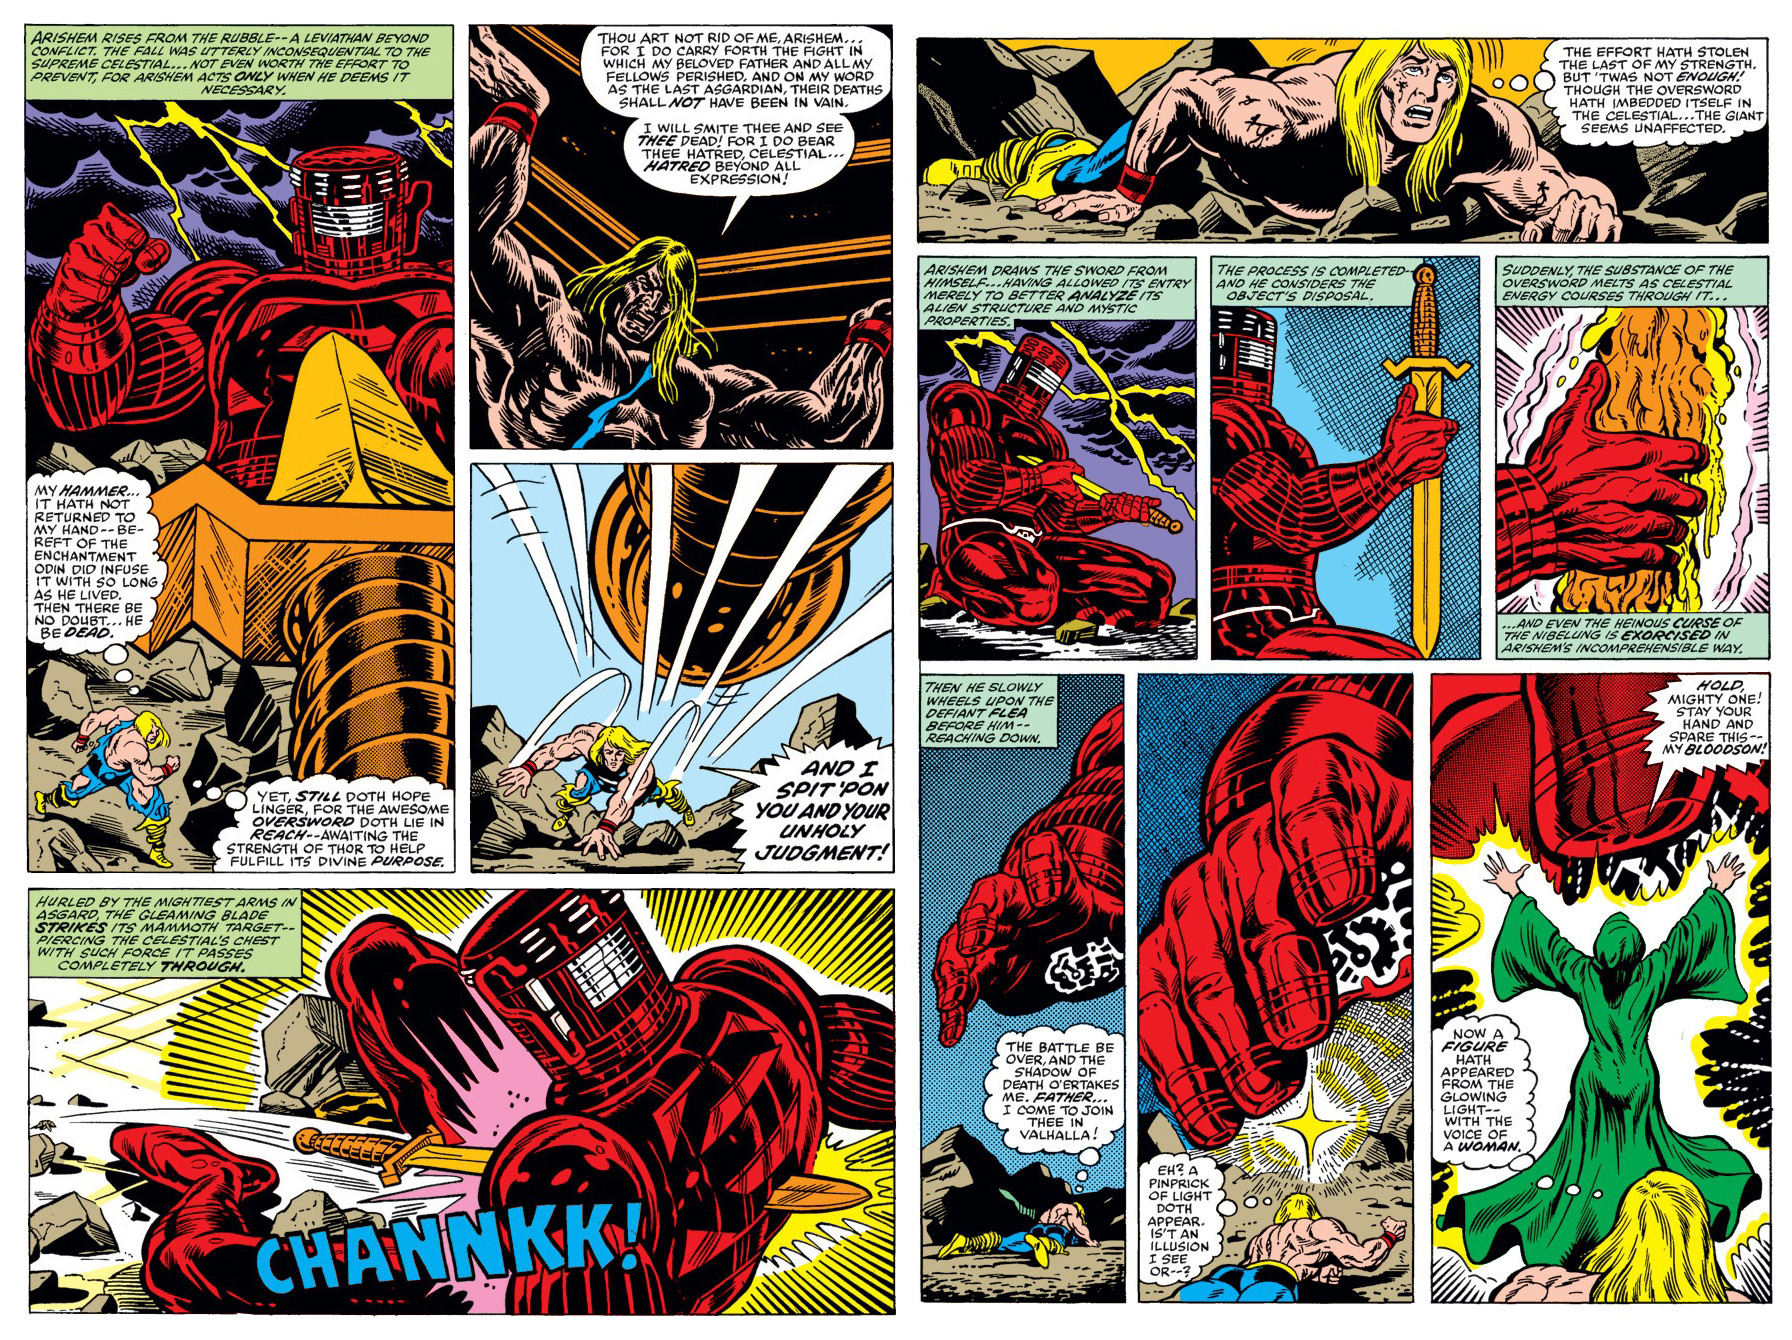 Marvel Comics: Tìm hiểu về thanh thần kiếm Odinsword - 1 trong những bảo khí mạnh nhất Asgard - Ảnh 2.